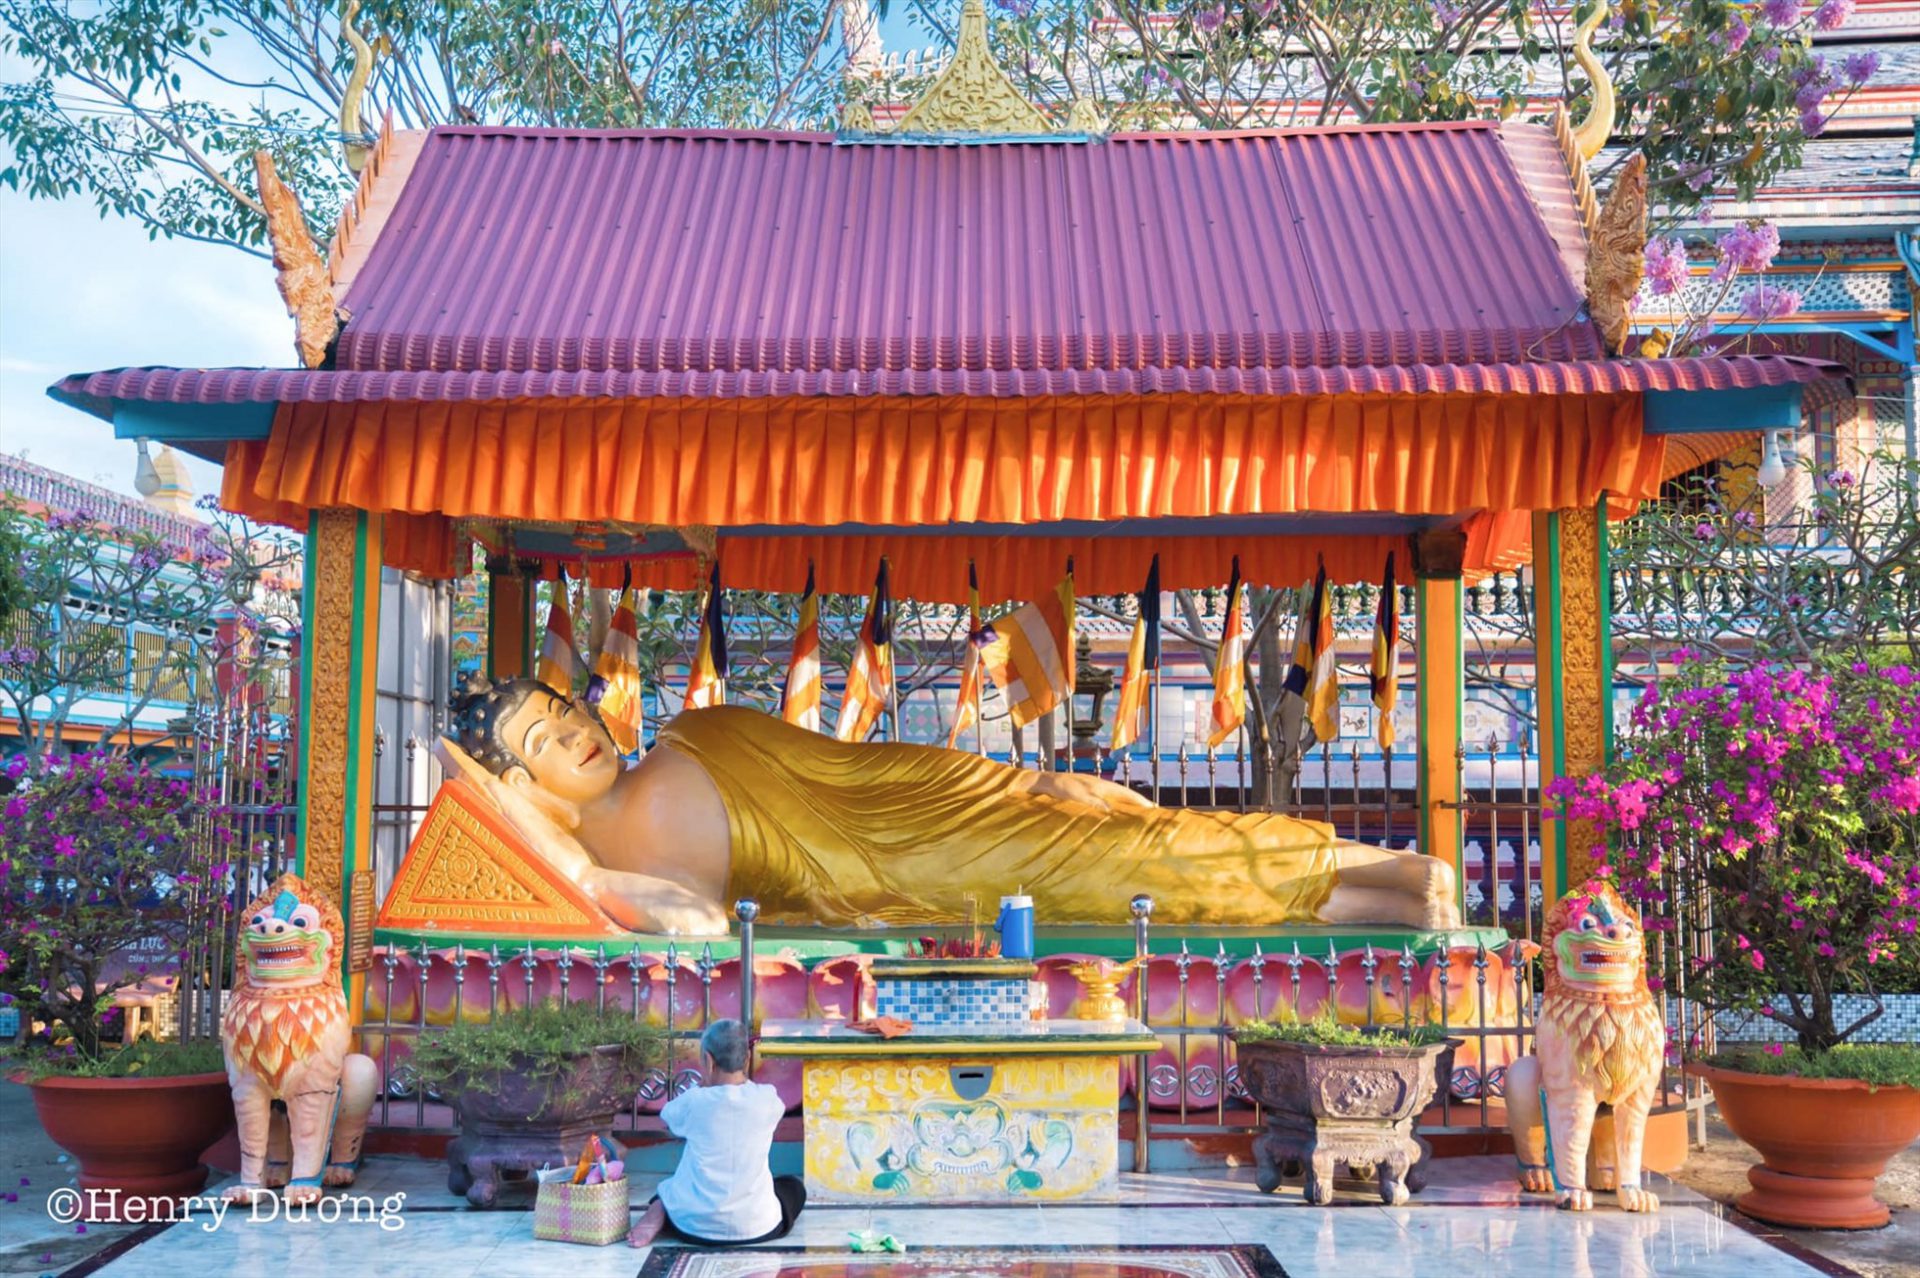 Chùa Chén Kiểu là chốn linh thiêng để người dân tìm đến sự an lành thanh tịnh. Đến với chùa Chén Kiểu, ngoài việc ngắm nhìn kiến trúc độc đáo của chùa, du khách còn có dịp tìm hiểu văn hóa của người dân Khmer.